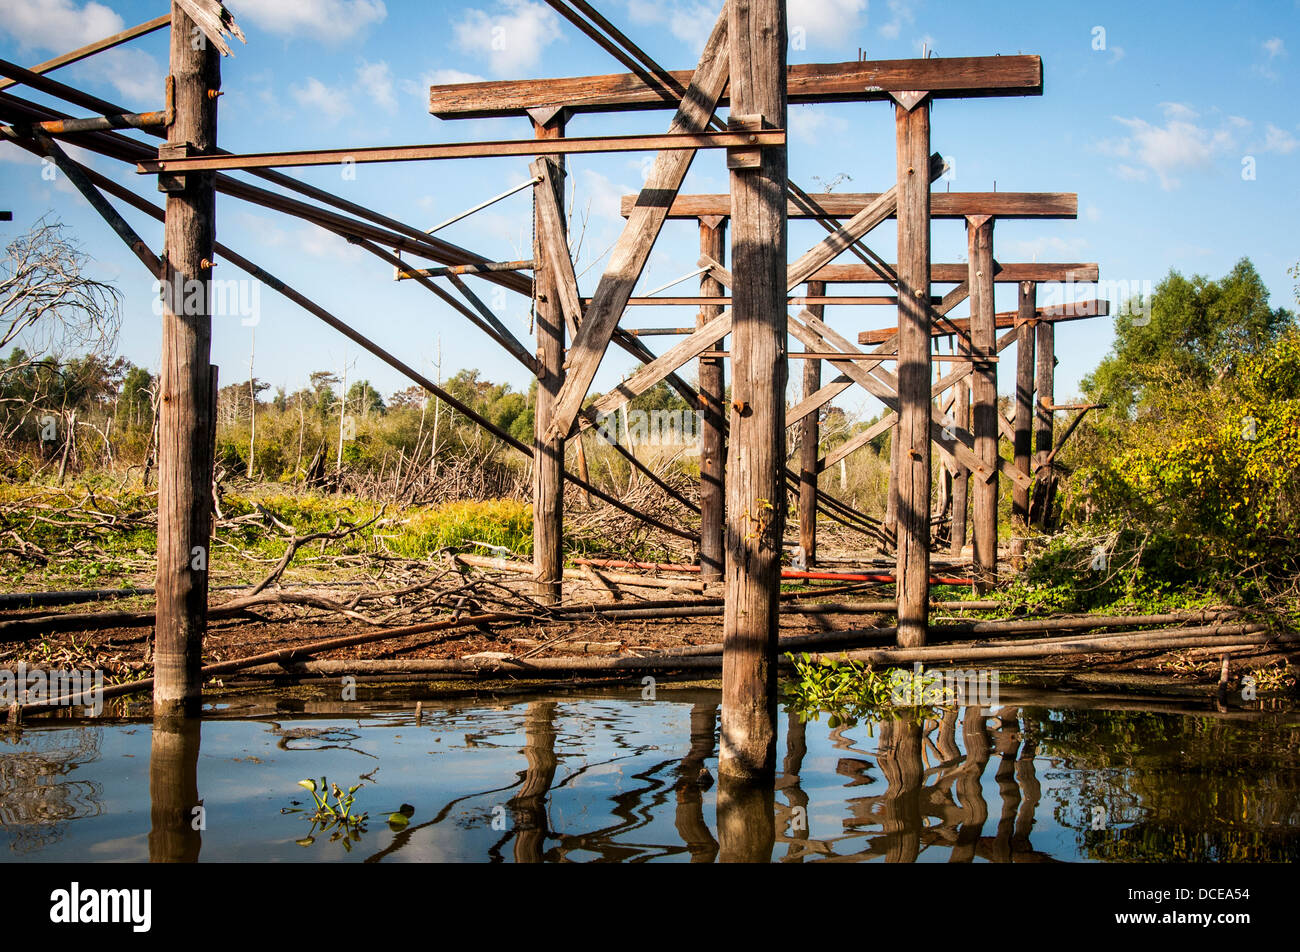 USA, Louisiana, Atchafalaya Basin, abandoned Bayou Sorrell Shell Oil Field. Stock Photo